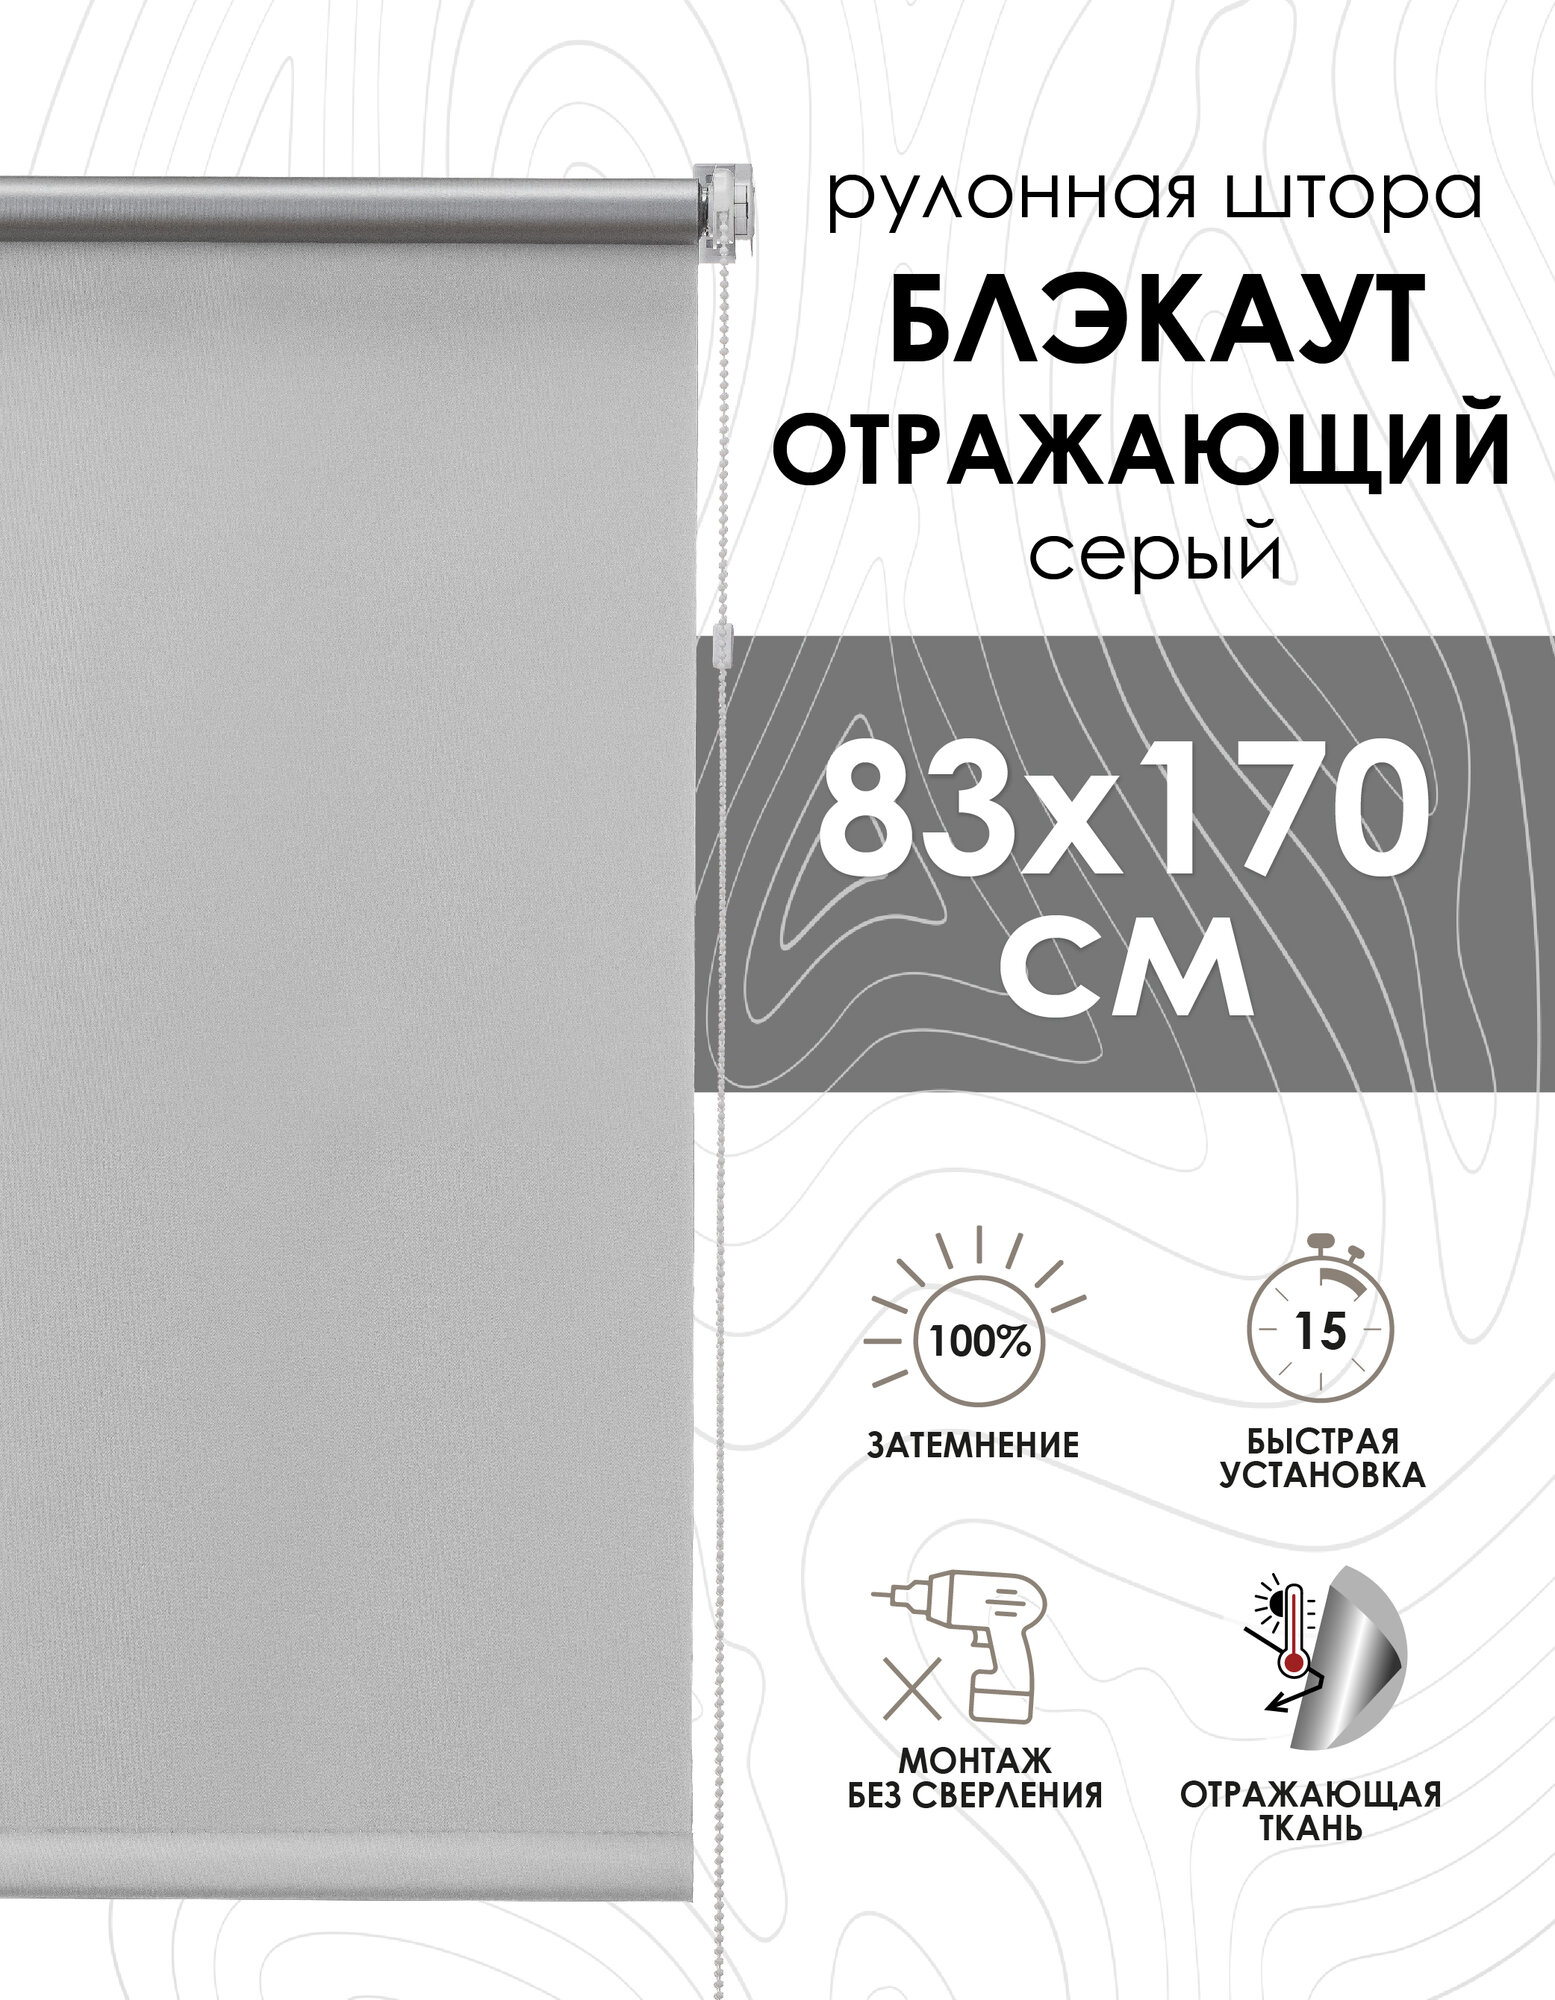 Рулонные шторы Blackout silverback отражающий серый 83х170 см арт. 81462083160